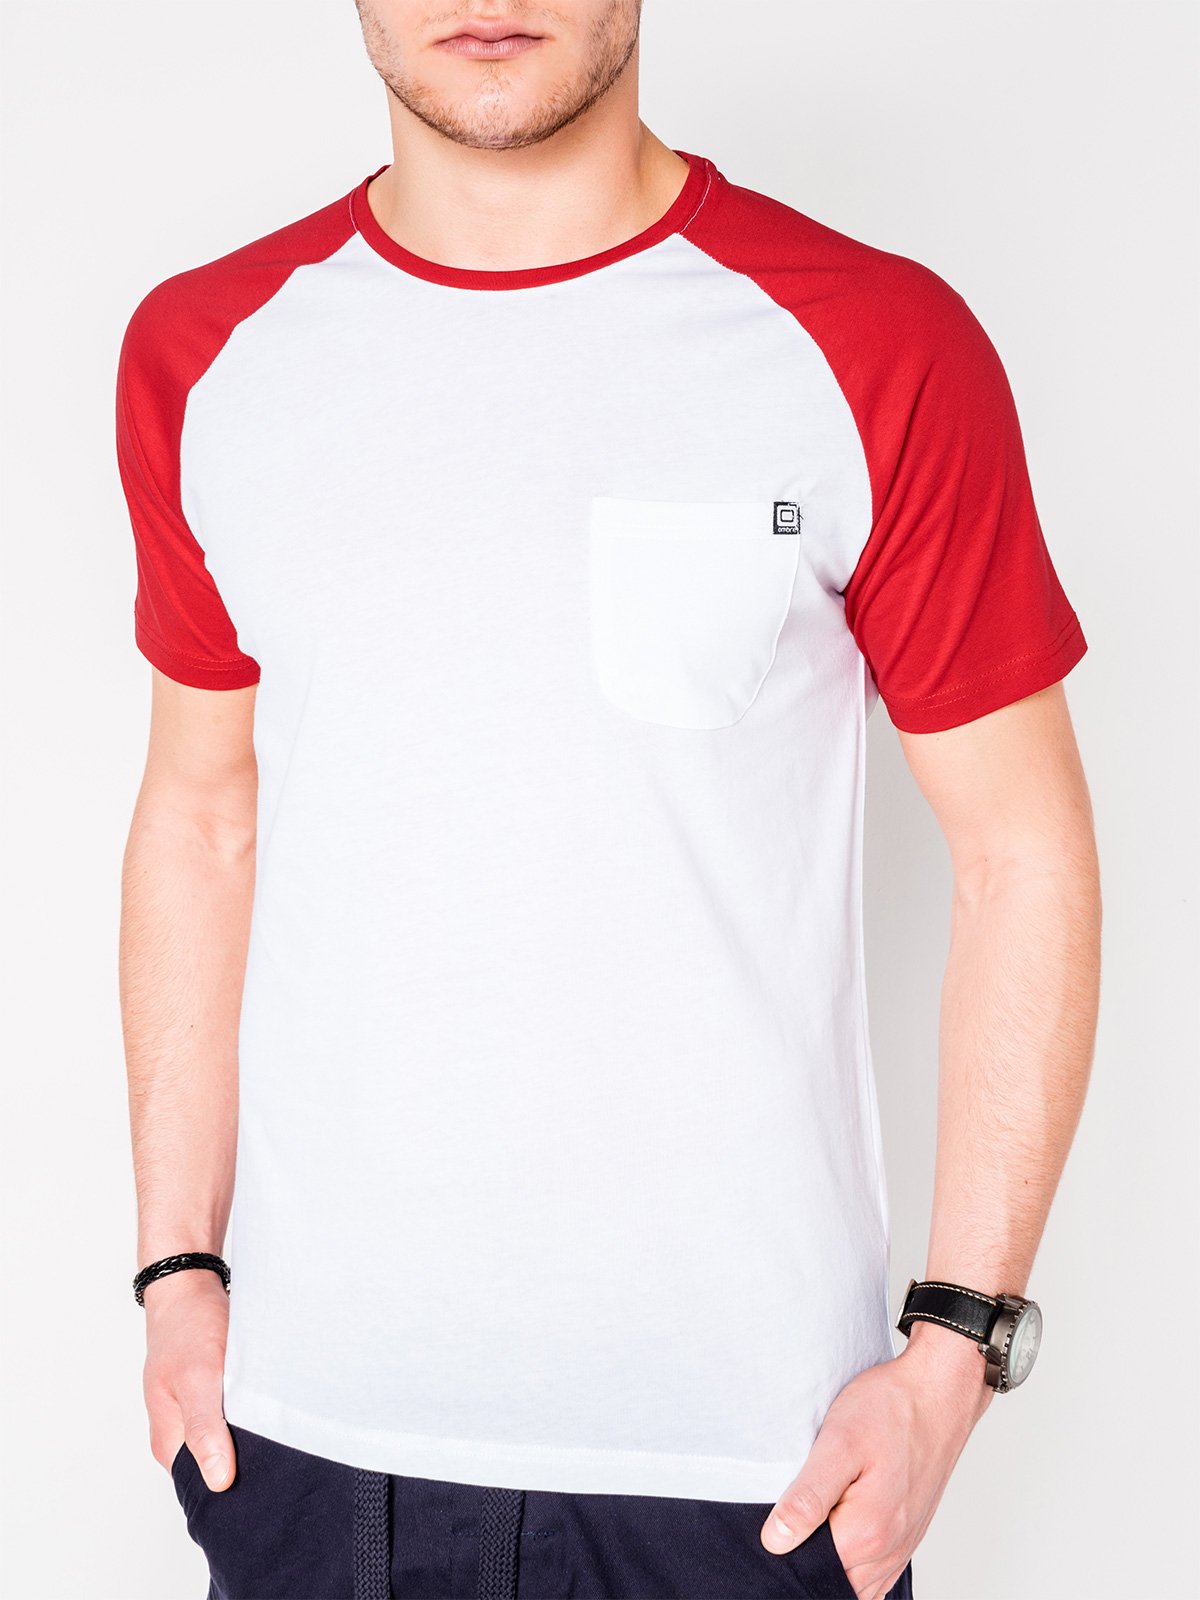 Men's plain t-shirt - white/red | MODONE wholesale - For Men